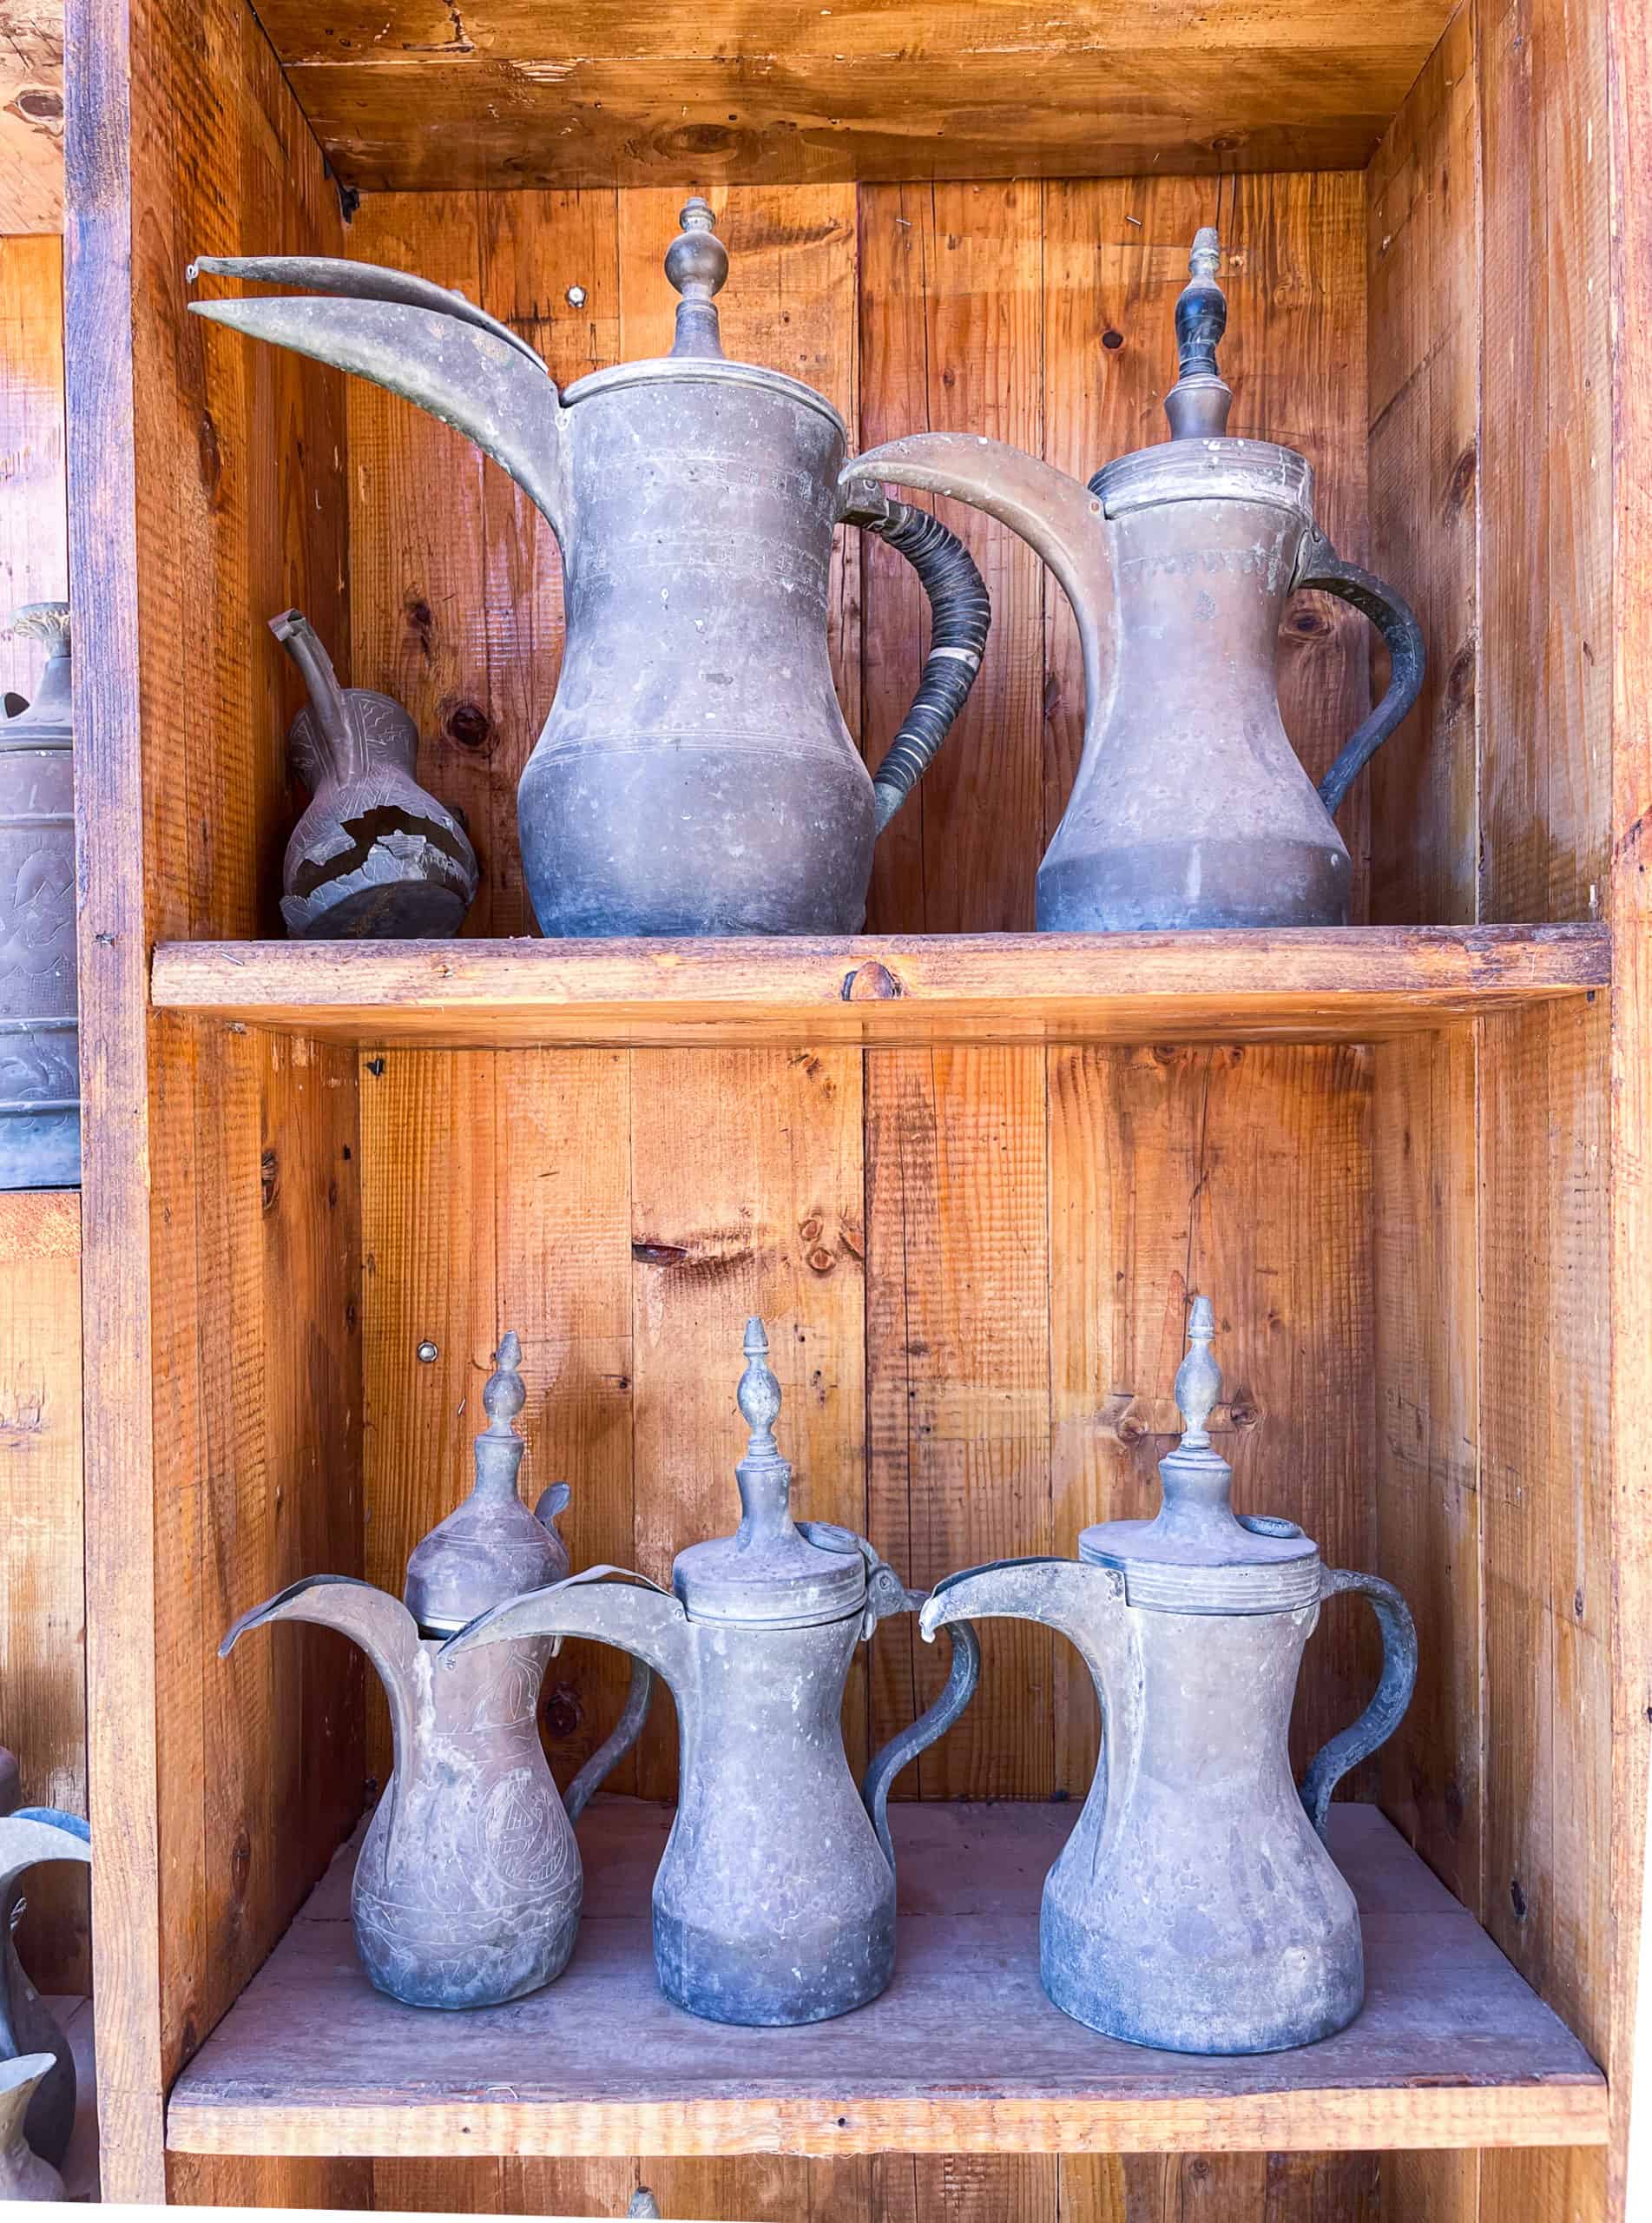 Jordan - line of Bedouin coffee pots for sale